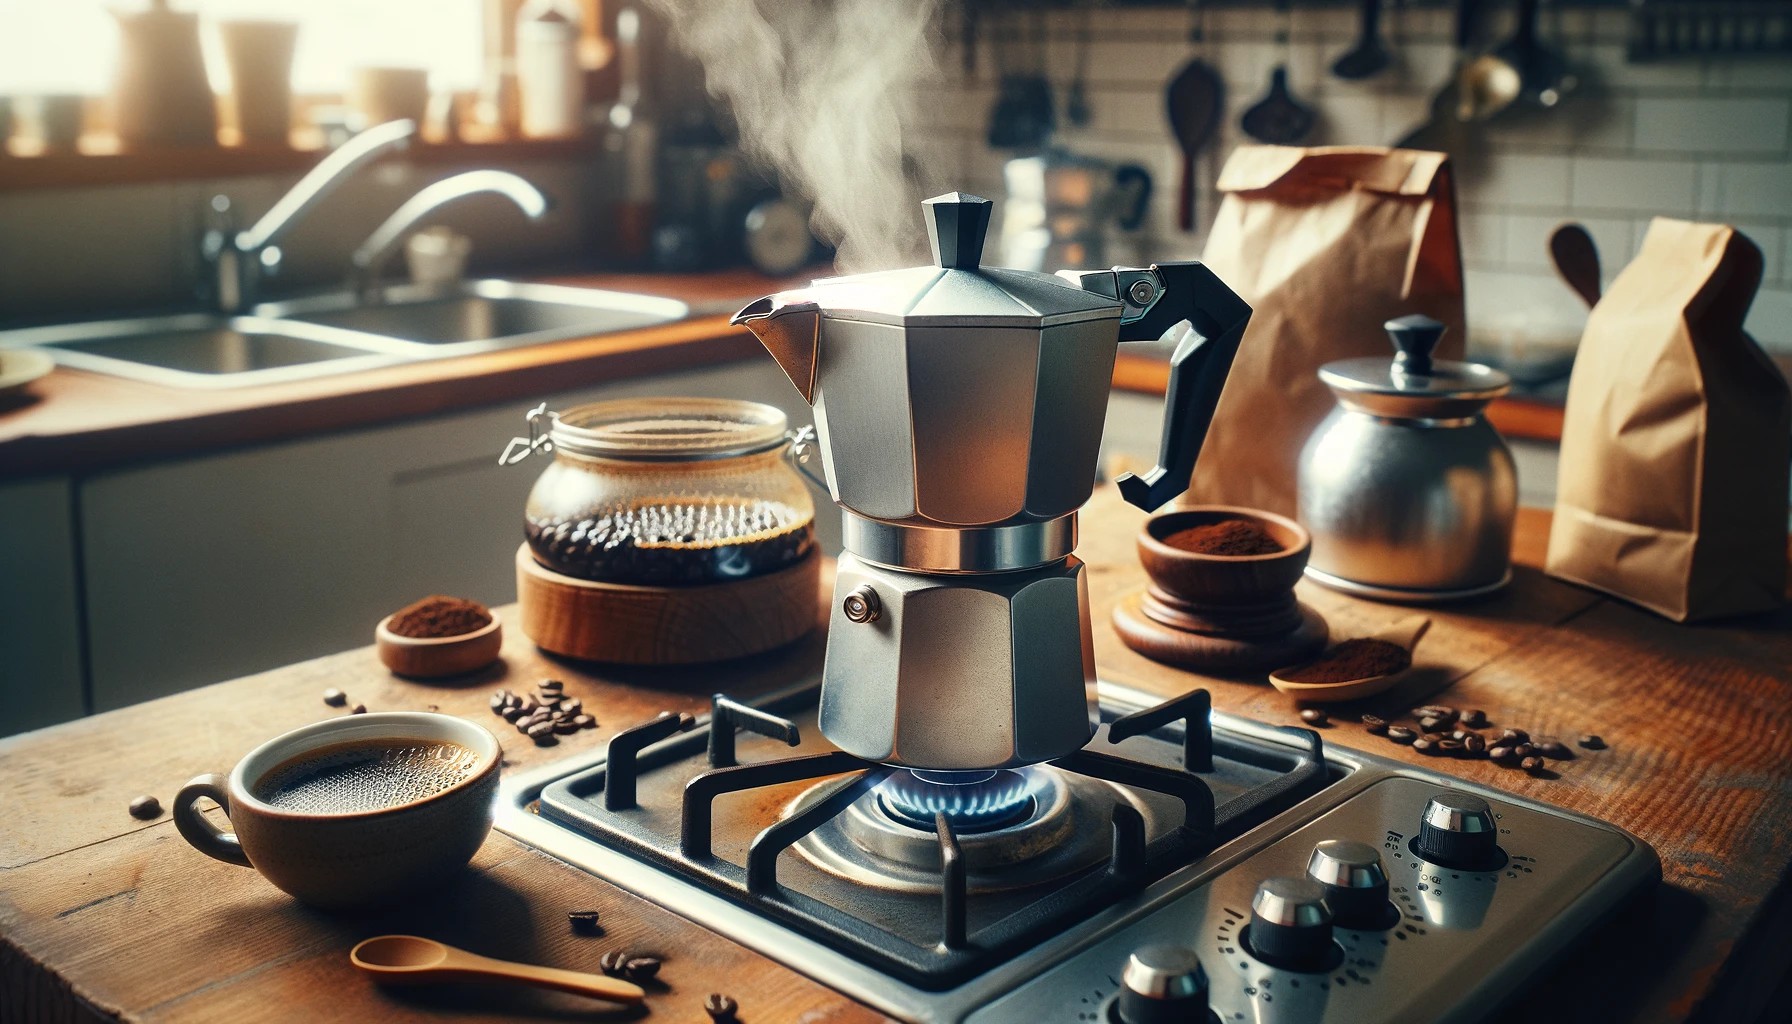 摩卡壺 濃縮咖啡 研磨 萃取 意式咖啡機 Moka pot espresso grinding extraction espresso machine